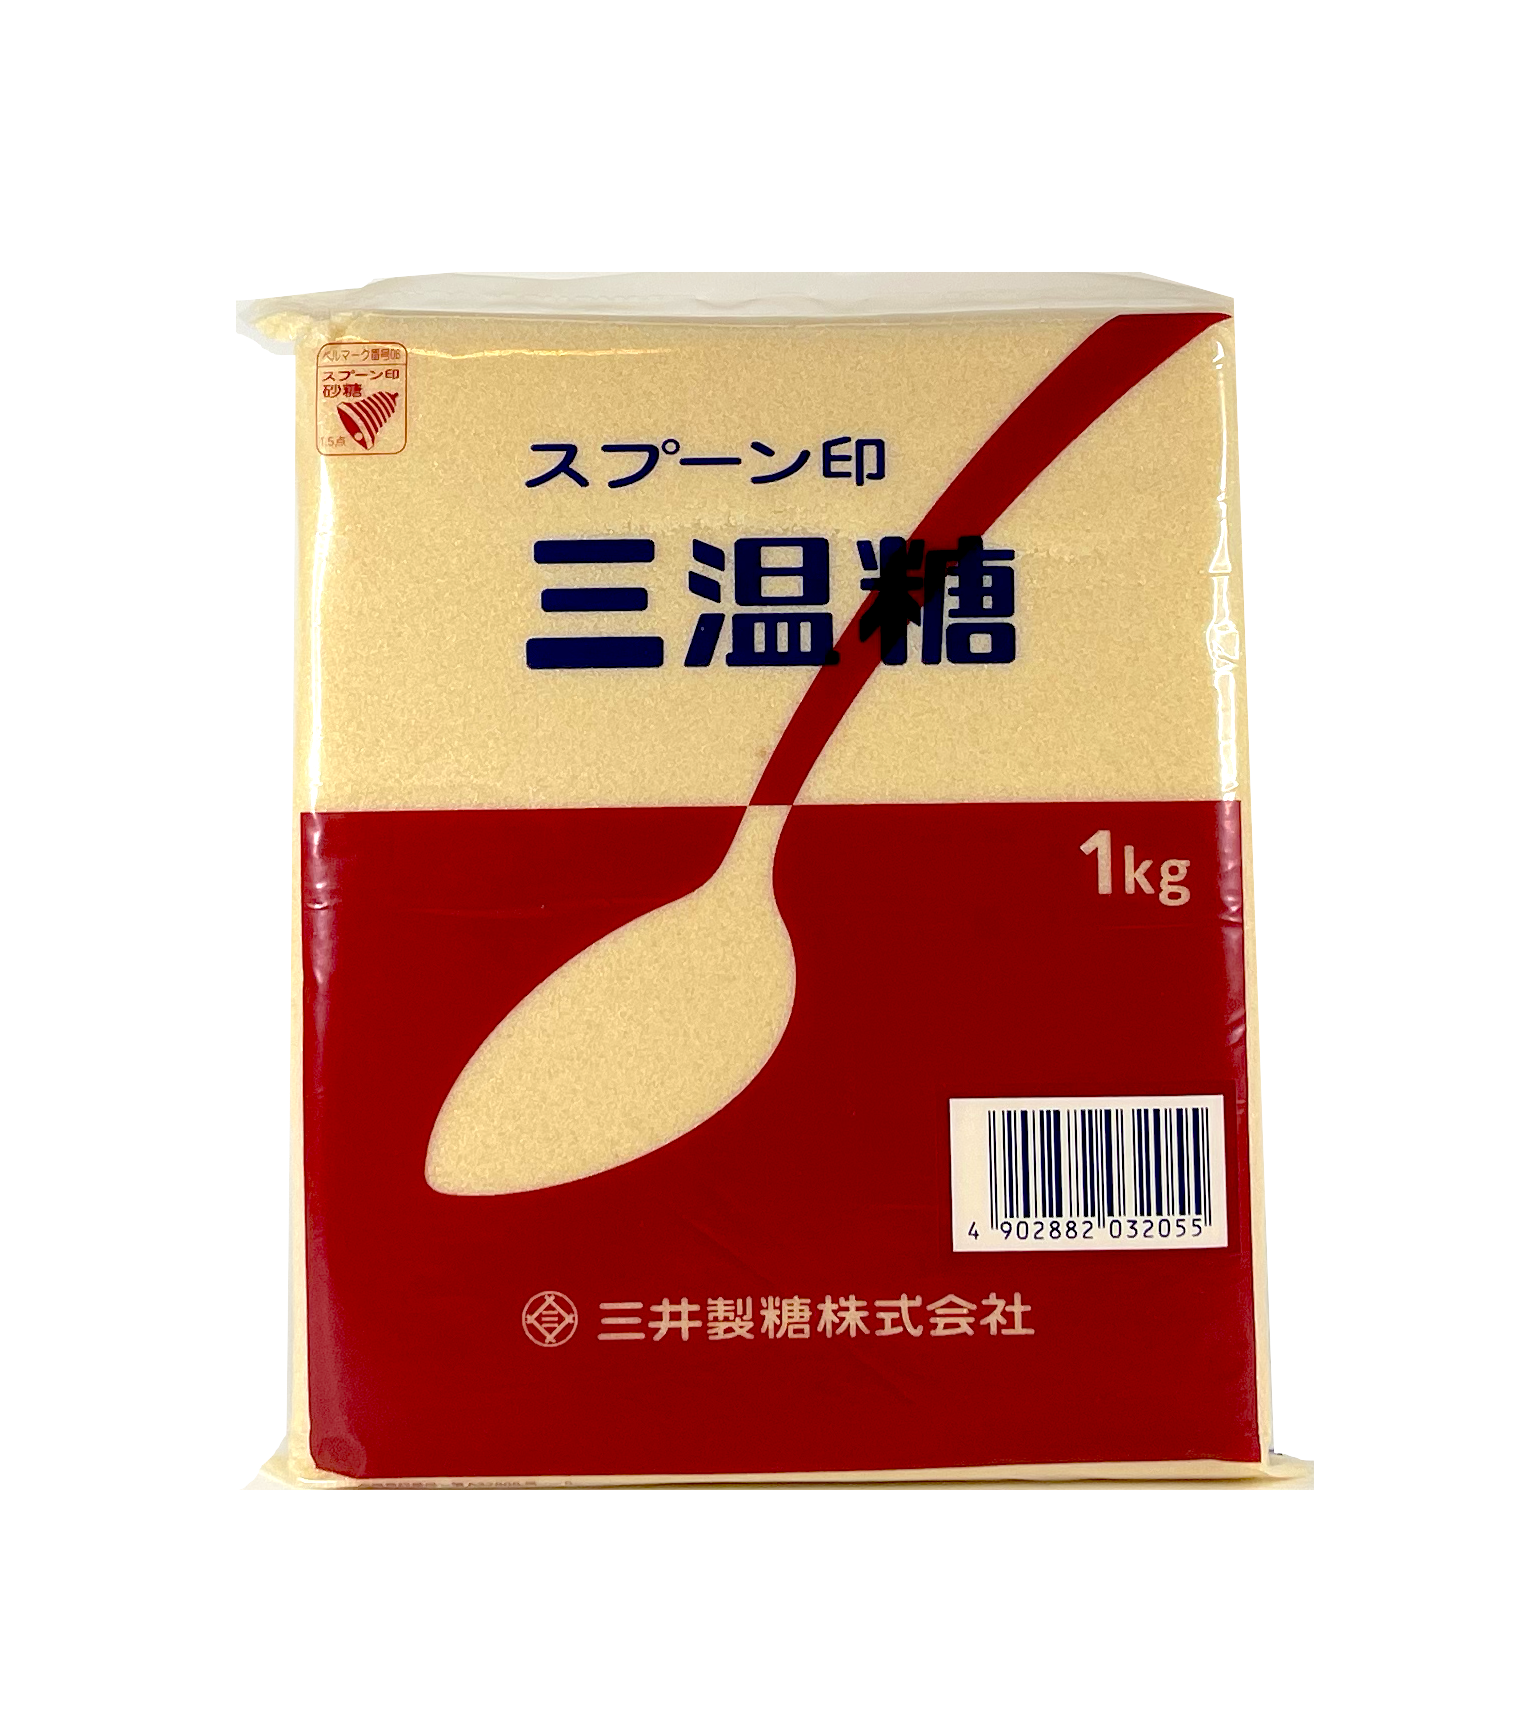 Socker 1kg San Wen Tang-Sanontou Japan